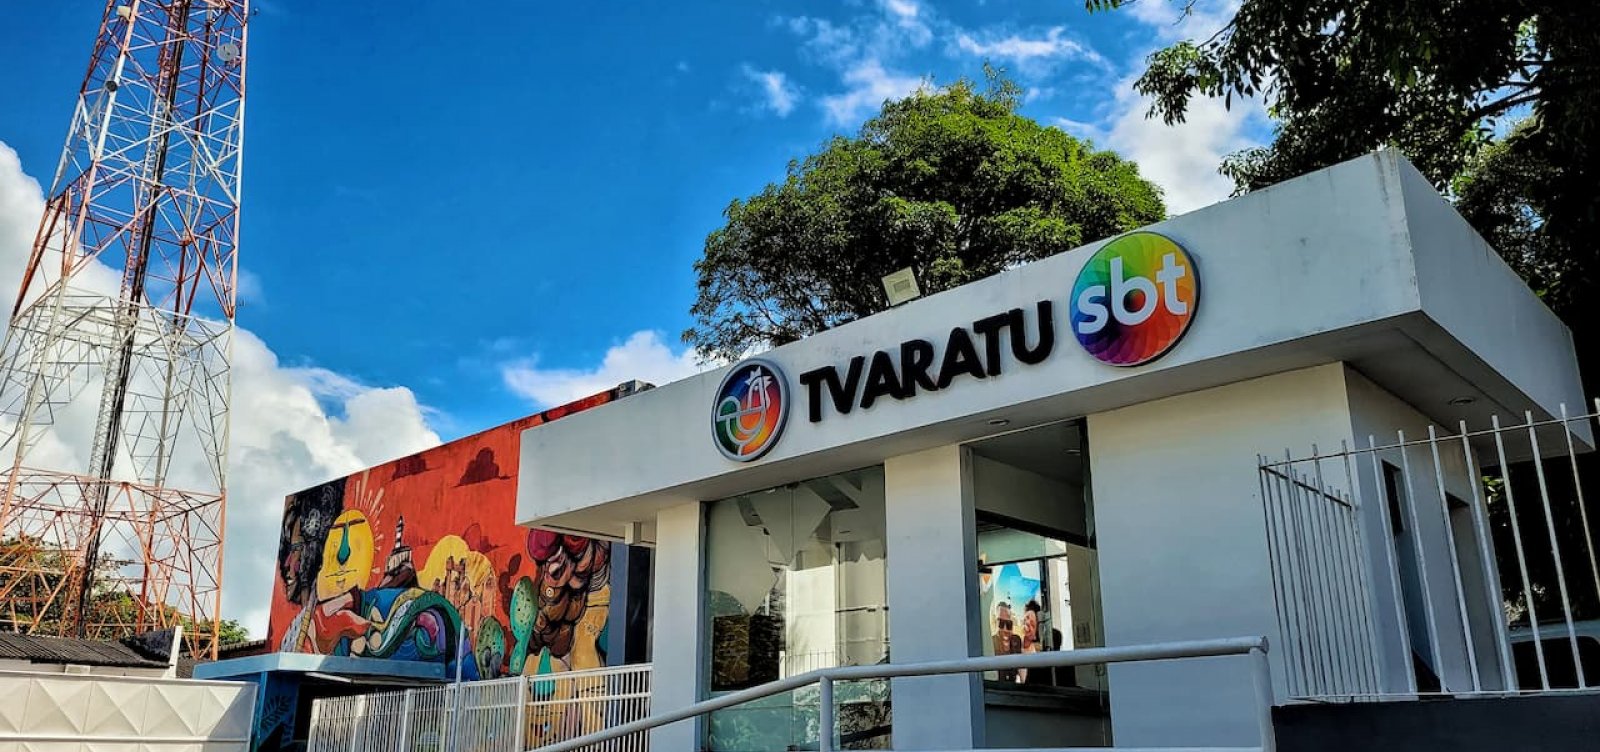 Novo programa da Aratu estreia em terceiro lugar no duelo com Record e TV Bahia 